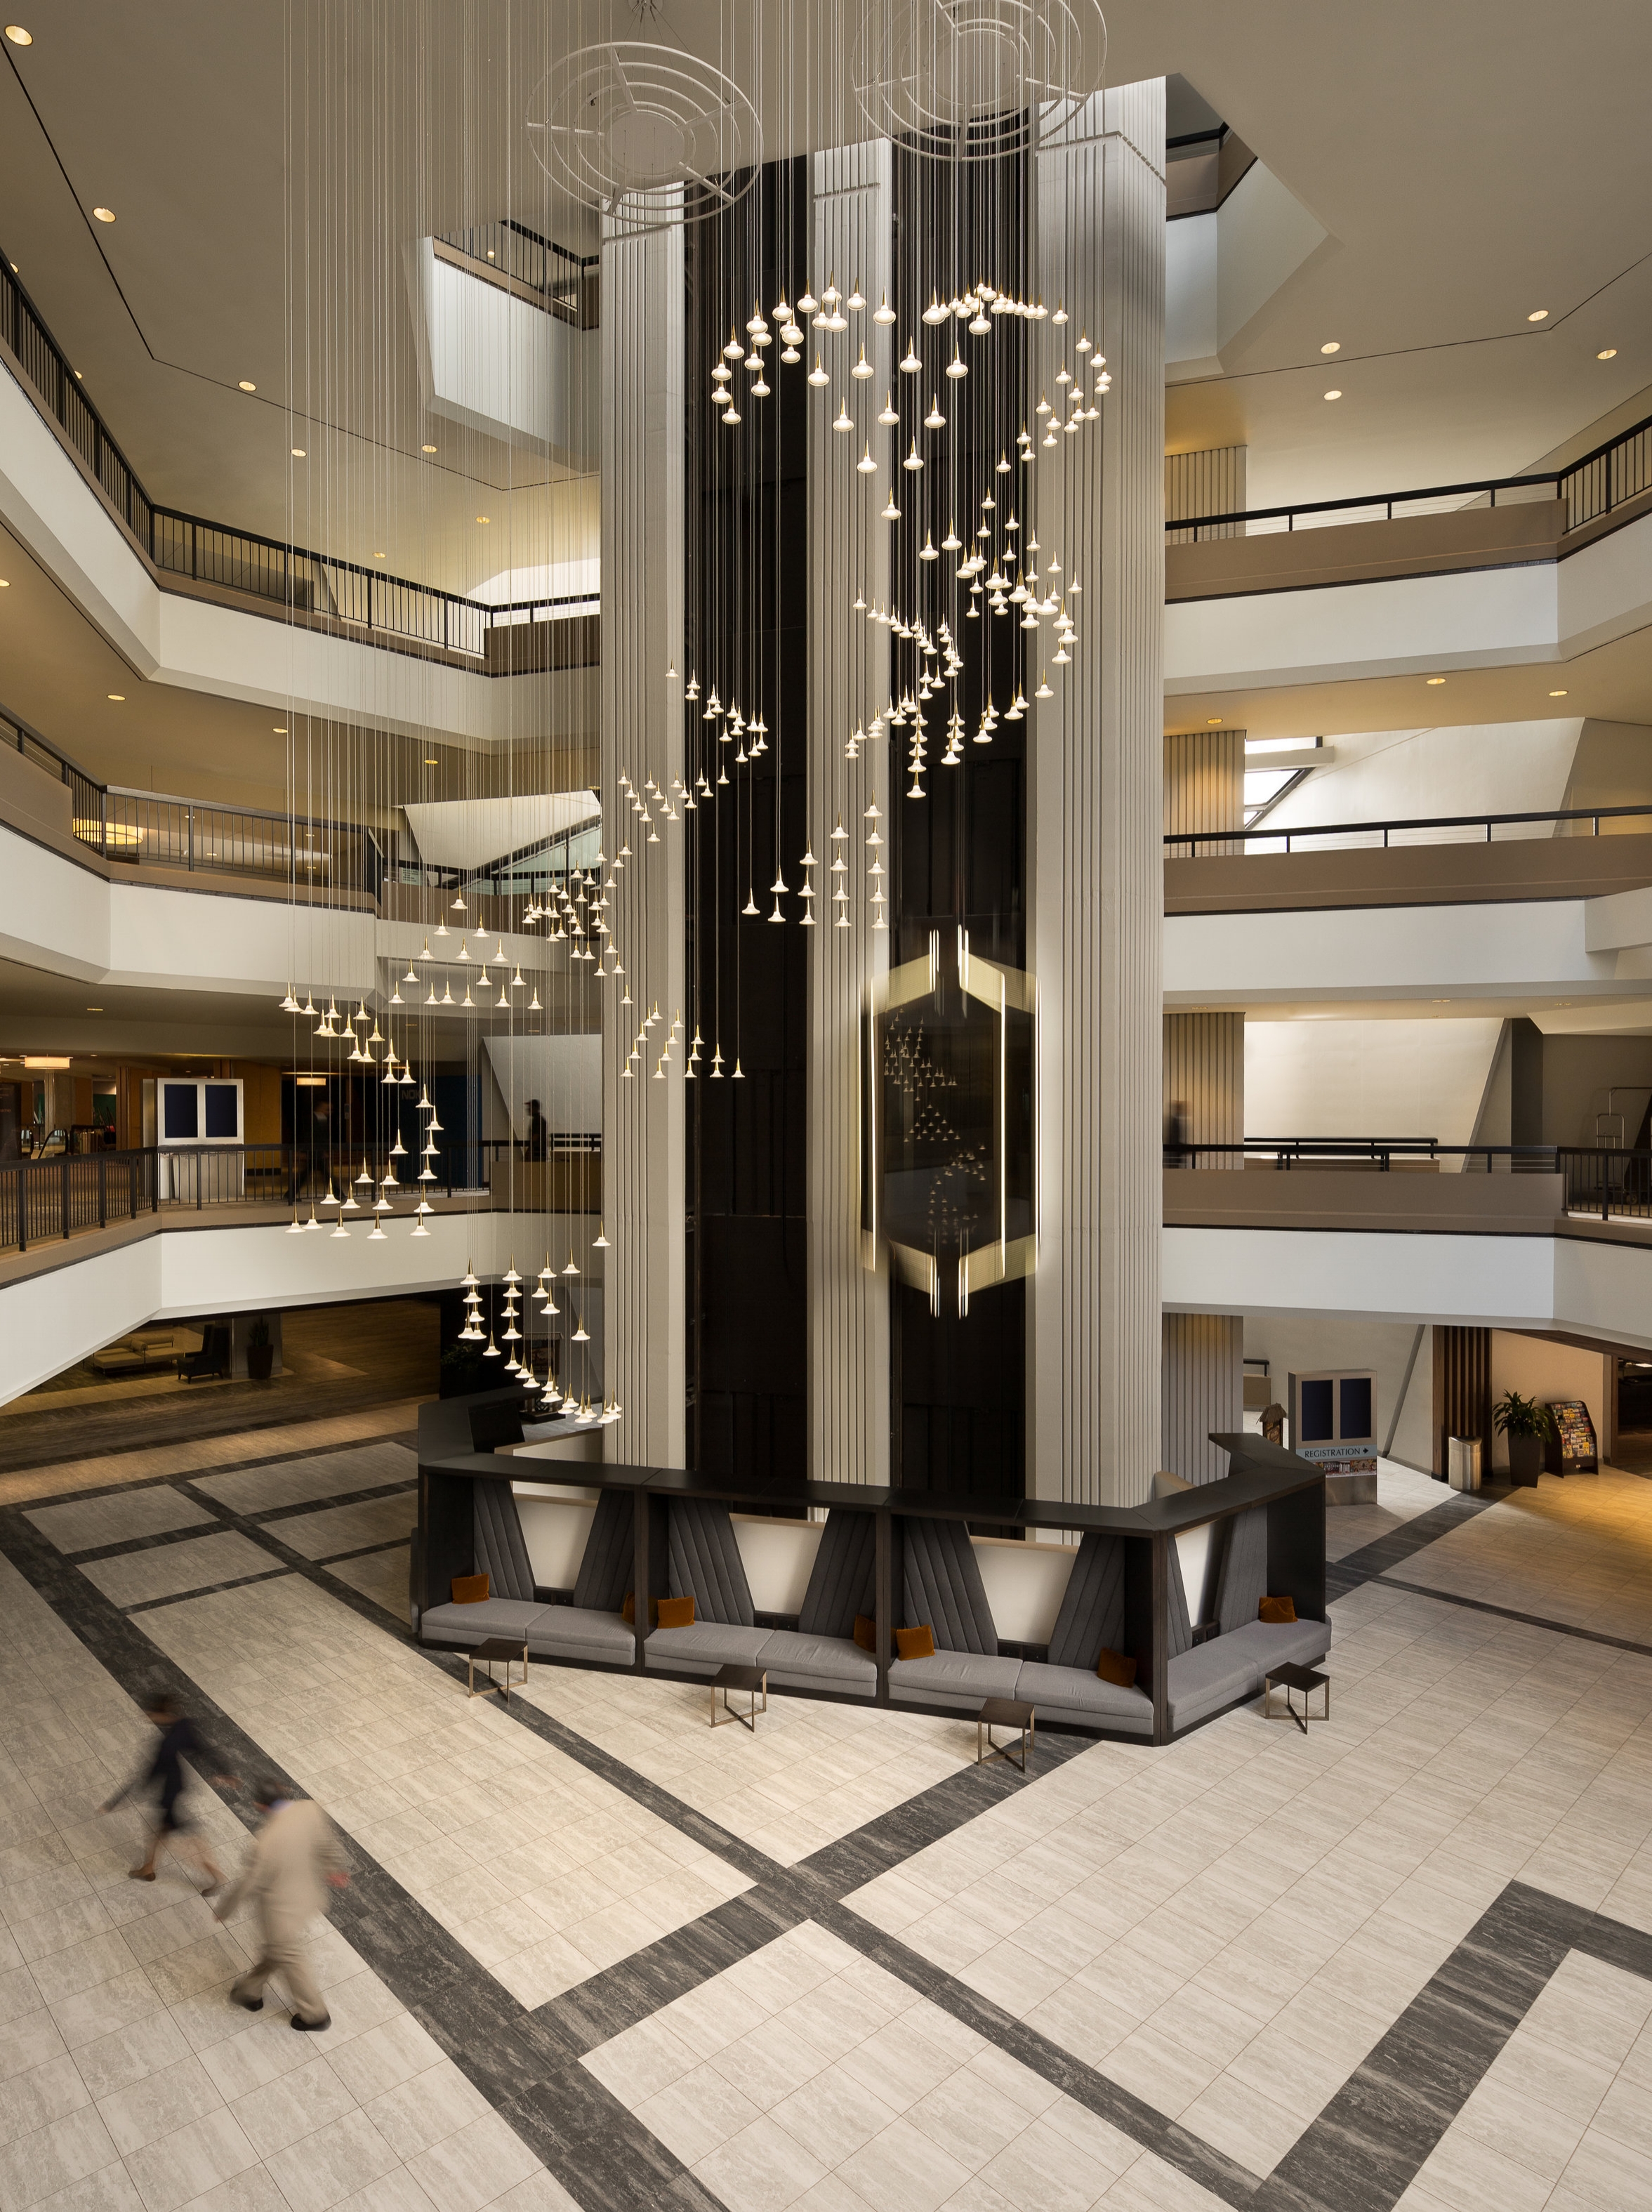 Atlanta Hilton Lobby for Lighting Company, Viso, Inc.